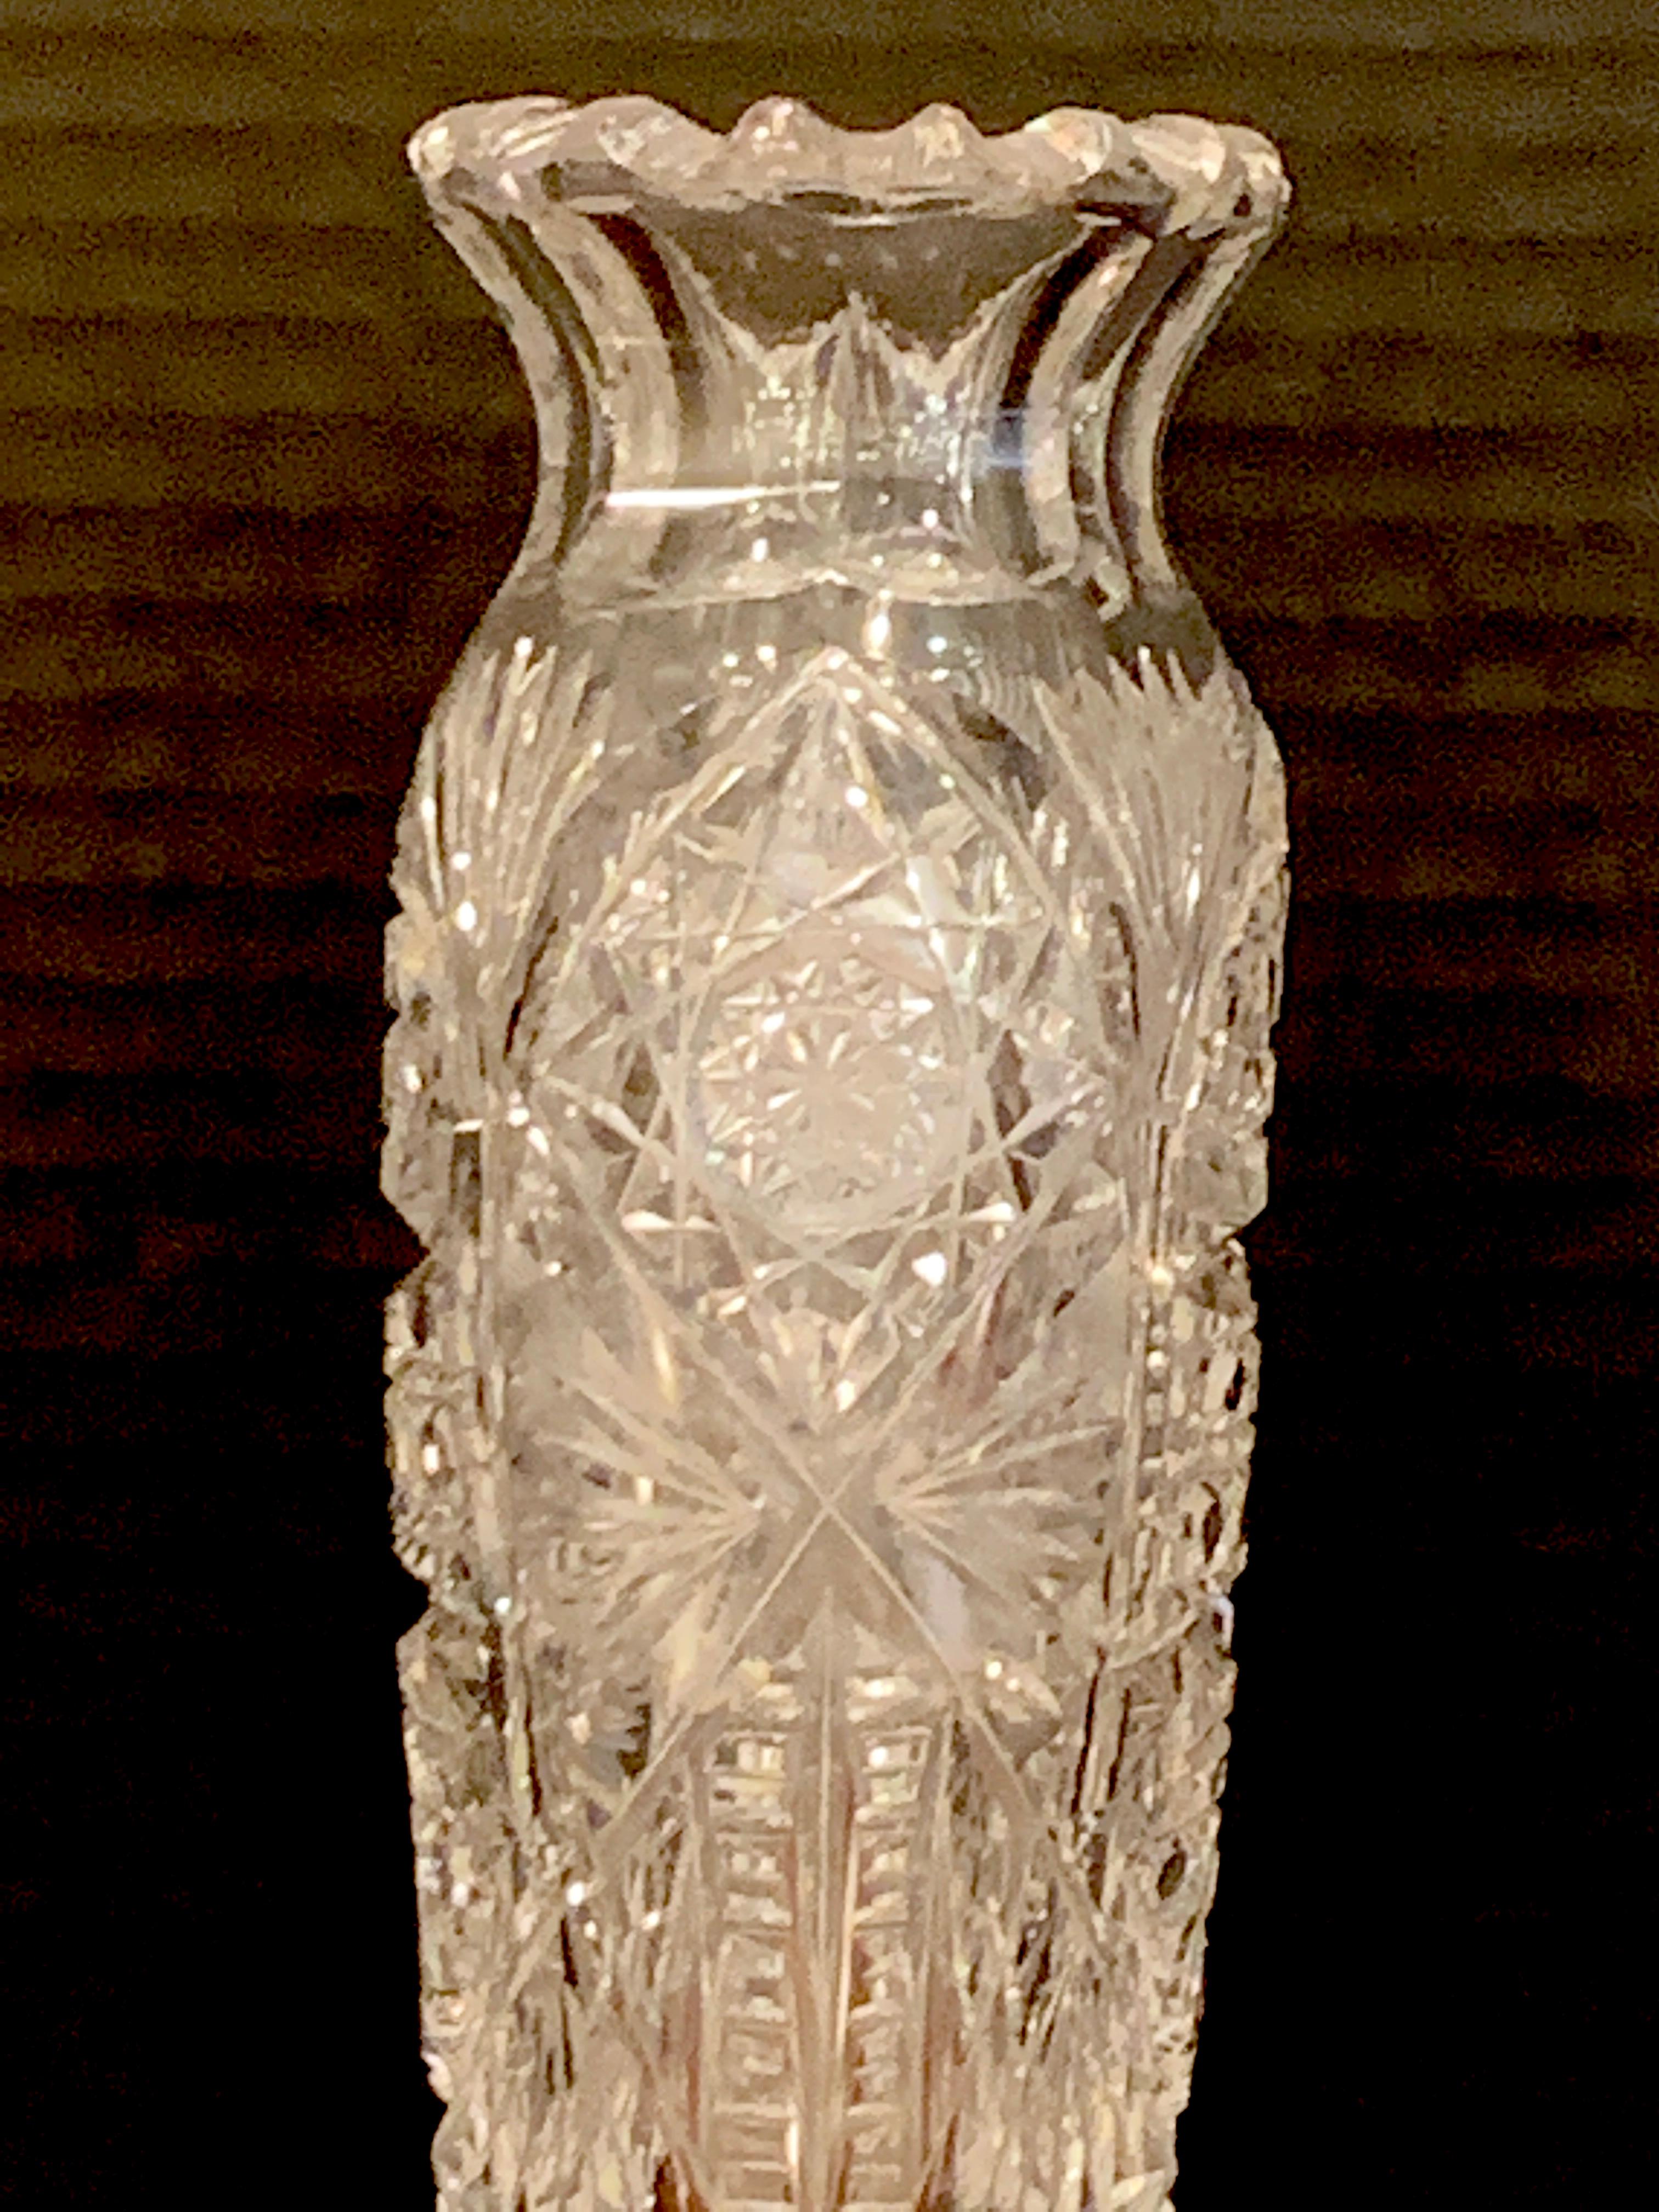 Old crystal vase molded heart-shaped vase in vintage molded glass